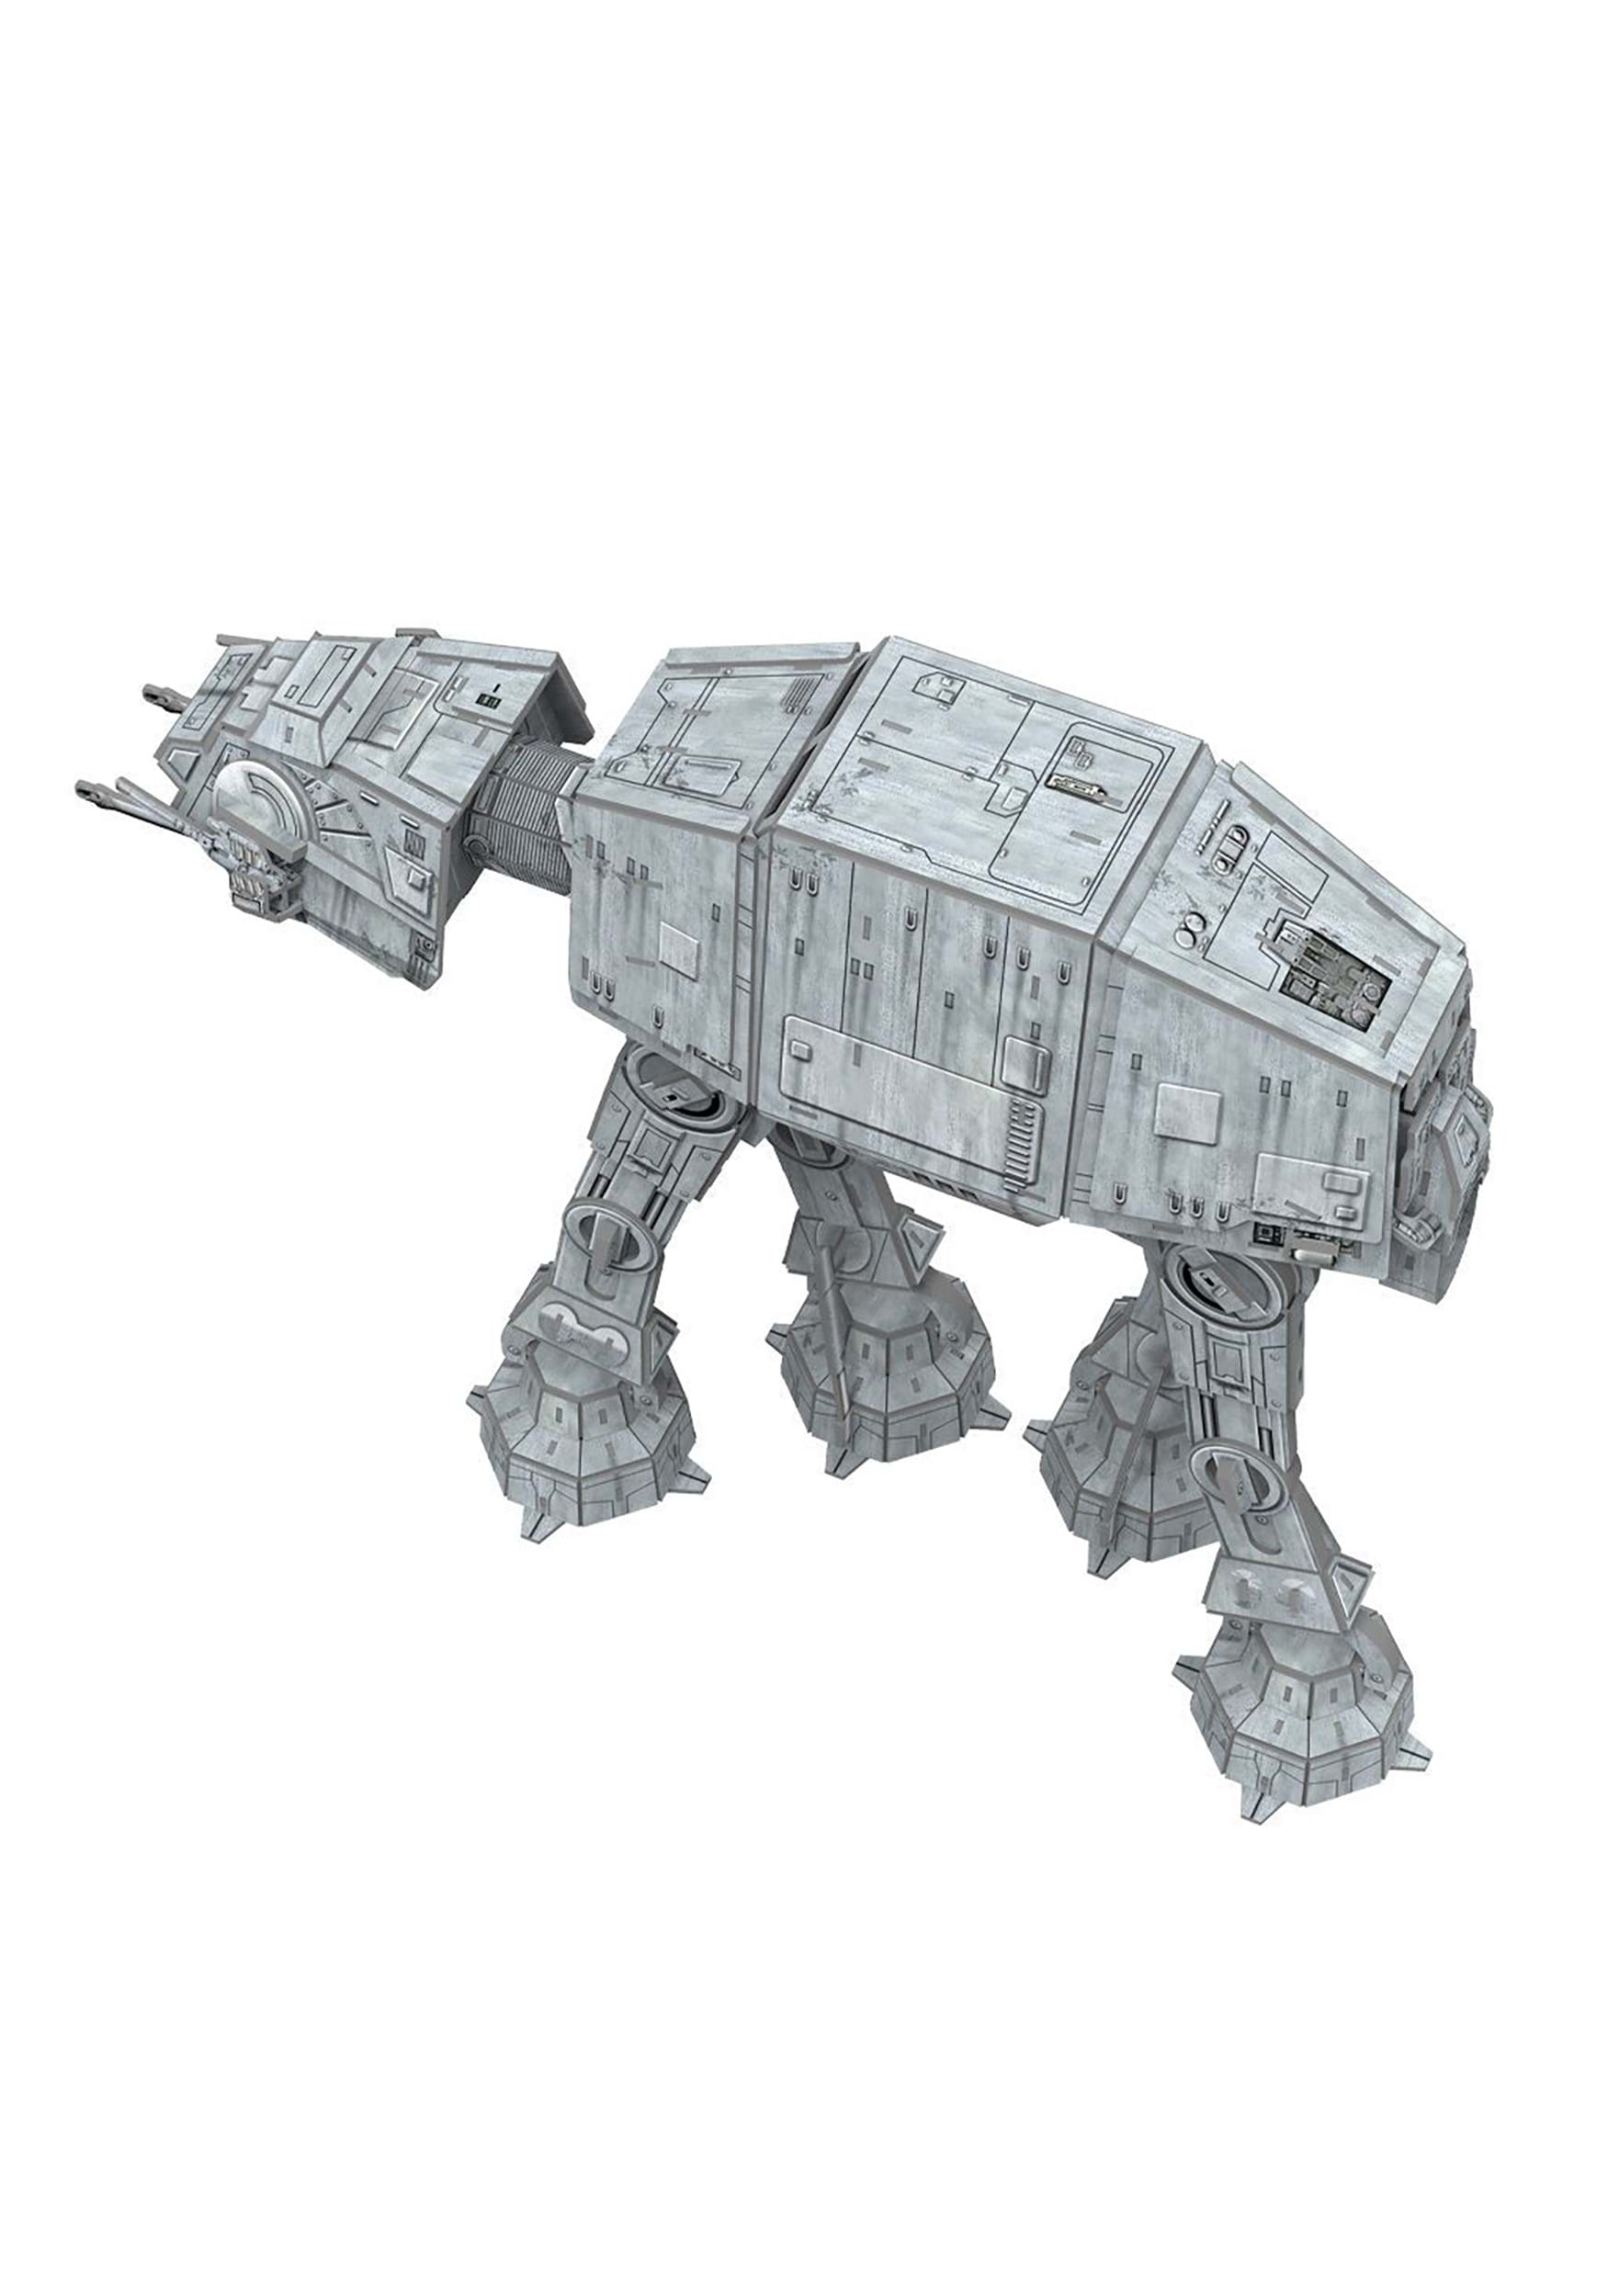 Star Wars: AT-AT Paper Model Kit